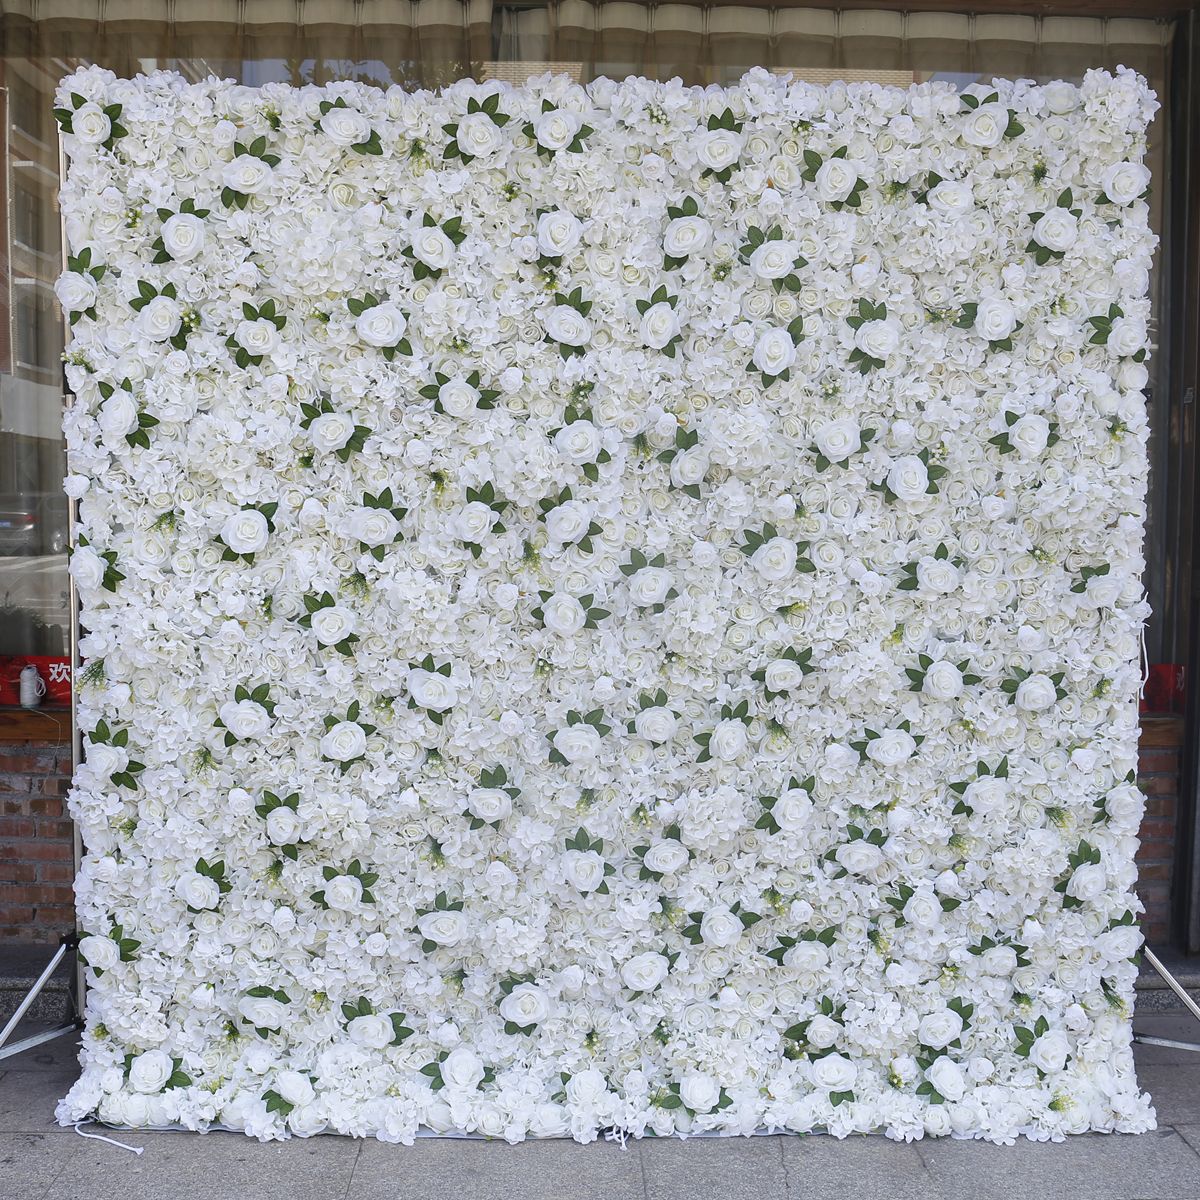 Cloth bottom wedding simulation flower background wall decoration props ດອກ​ໄມ້​ທຽມ​ແລະ​ຮູບ​ພາບ​ທີ່​ກໍາ​ແພງ​ຫີນ​ຕົກ​ແຕ່ງ​ສໍາ​ລັບ​ການ​ສ້າງ​ການ​ຄັດ​ເລືອກ